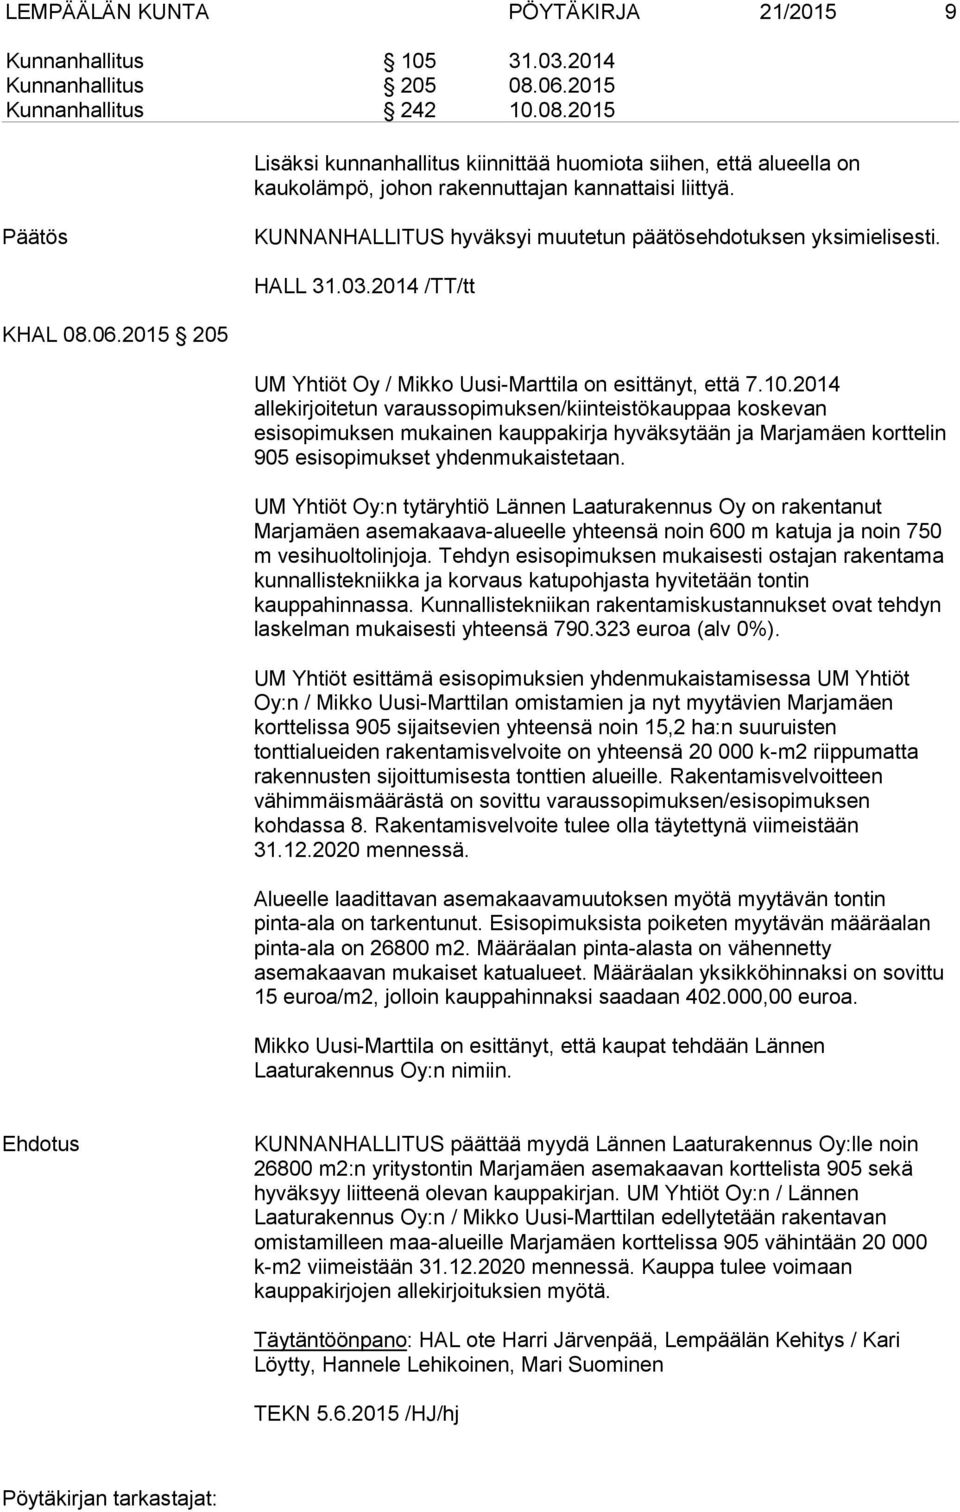 KUNNANHALLITUS hyväksyi muutetun päätösehdotuksen yksimielisesti. HALL 31.03.2014 /TT/tt KHAL 08.06.2015 205 UM Yhtiöt Oy / Mikko Uusi-Marttila on esittänyt, että 7.10.